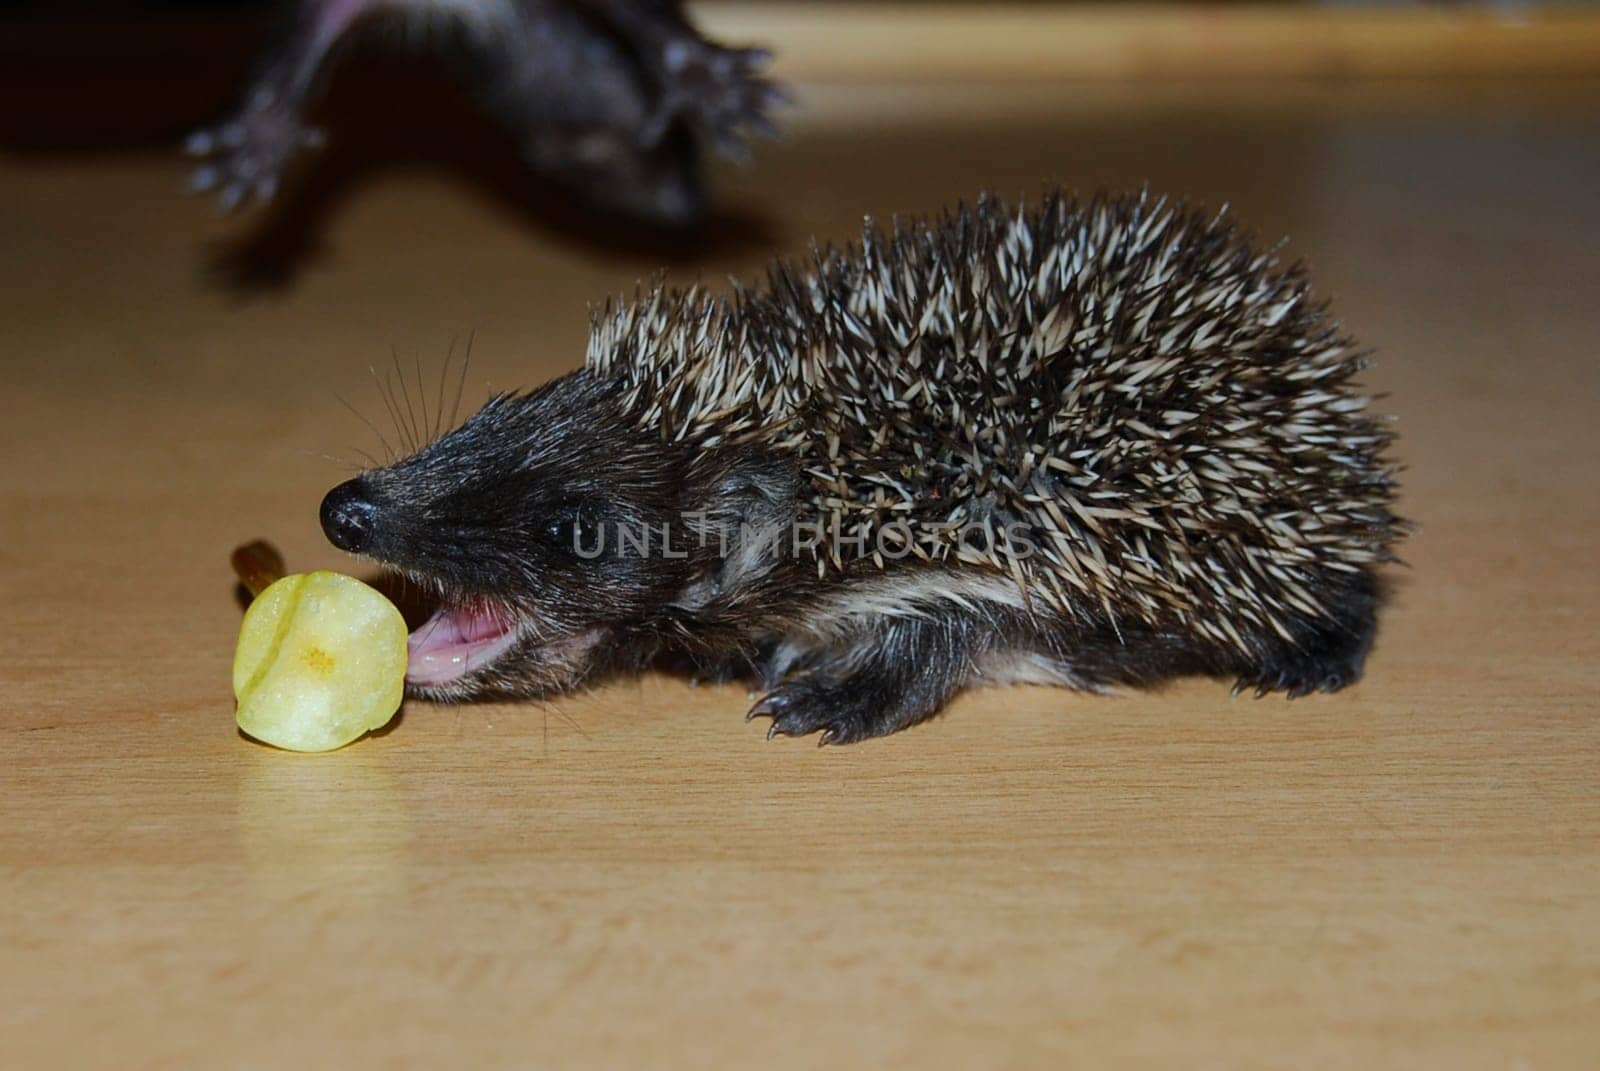 Little hedgehog. Two weeks old. One hedgehog is eating a pear.